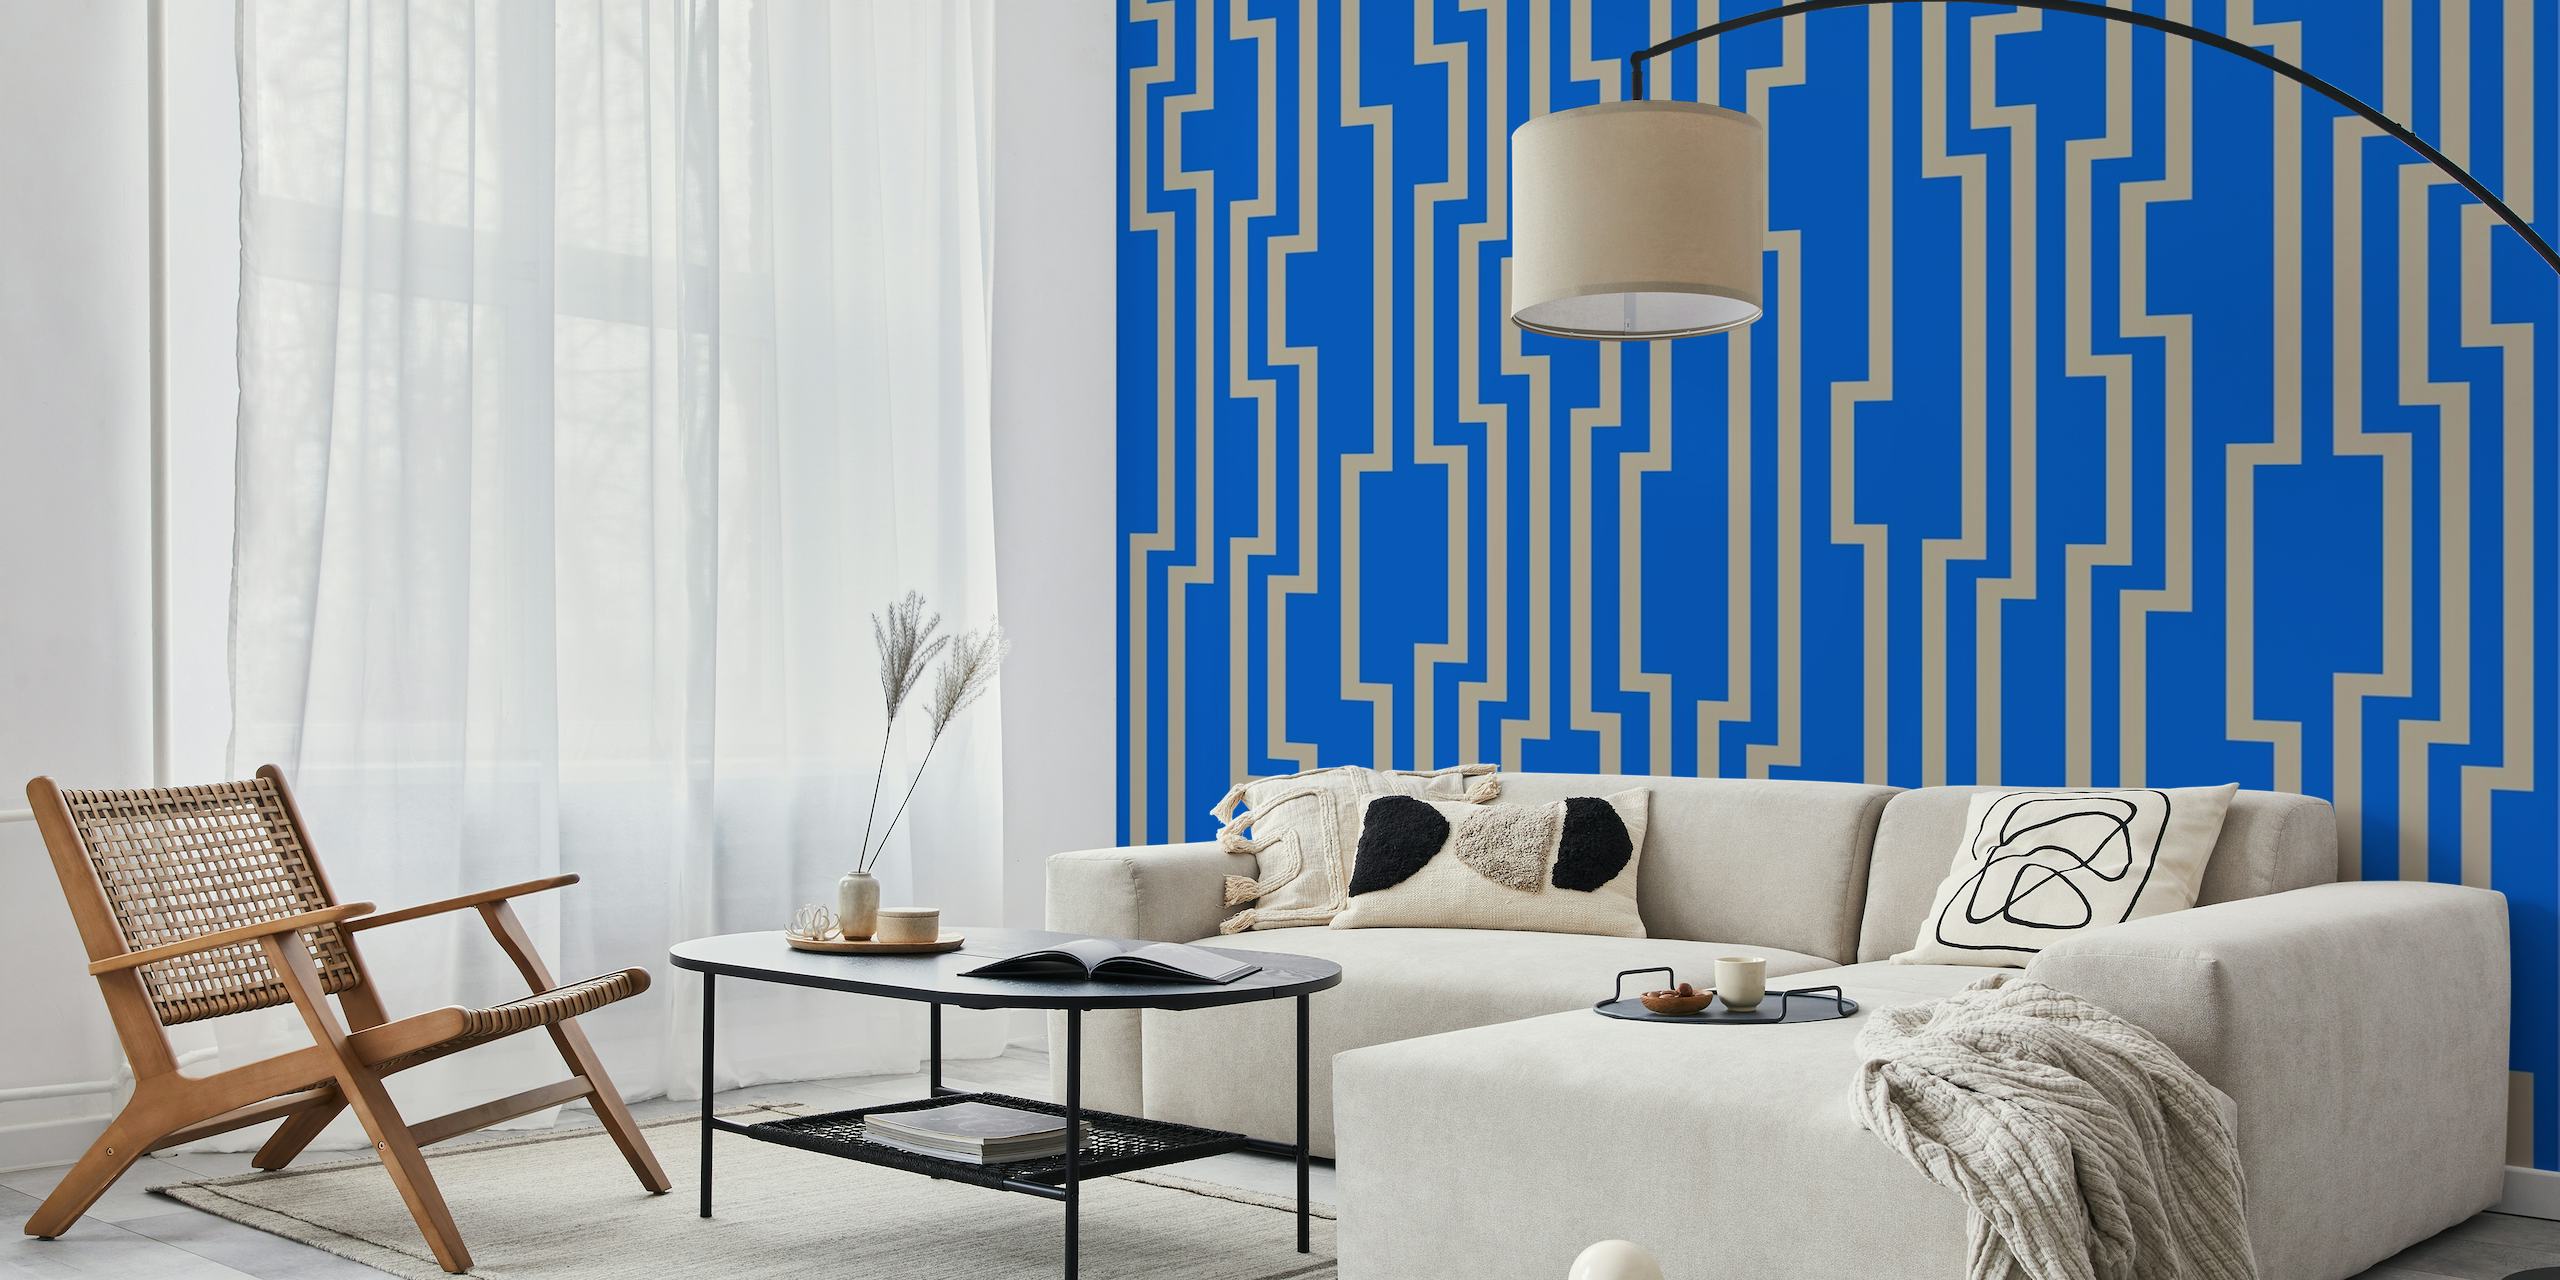 Geometrische zigzagstrepen muurschildering in bruine en blauwe kleuren.